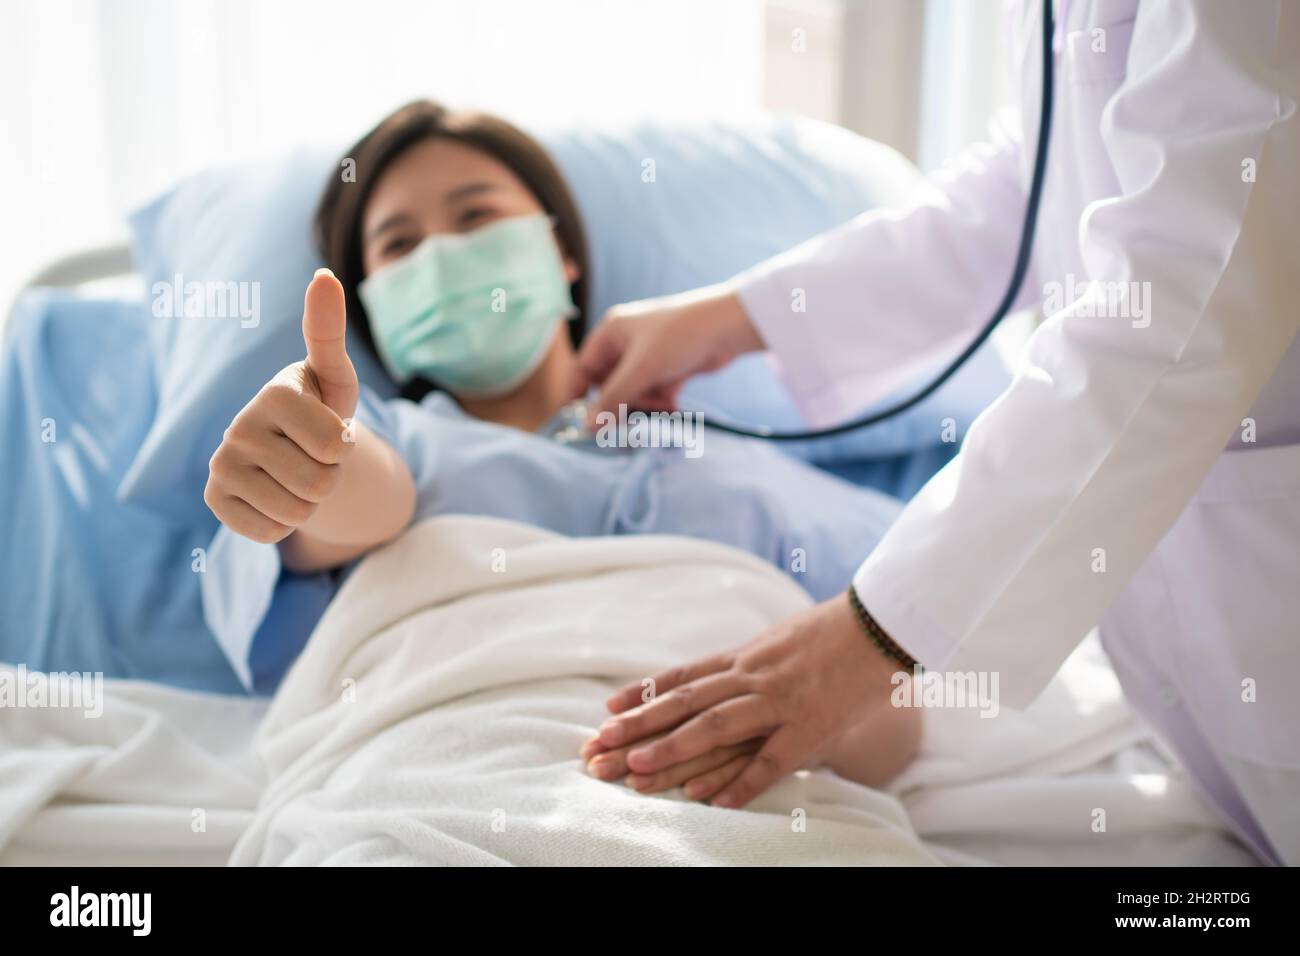 Une patiente asiatique heureuse porte un masque, se repose sur le lit et lève le pouce.Lorsqu'un médecin utilise un stéthoscope pour écouter les poumons.Concept de Banque D'Images